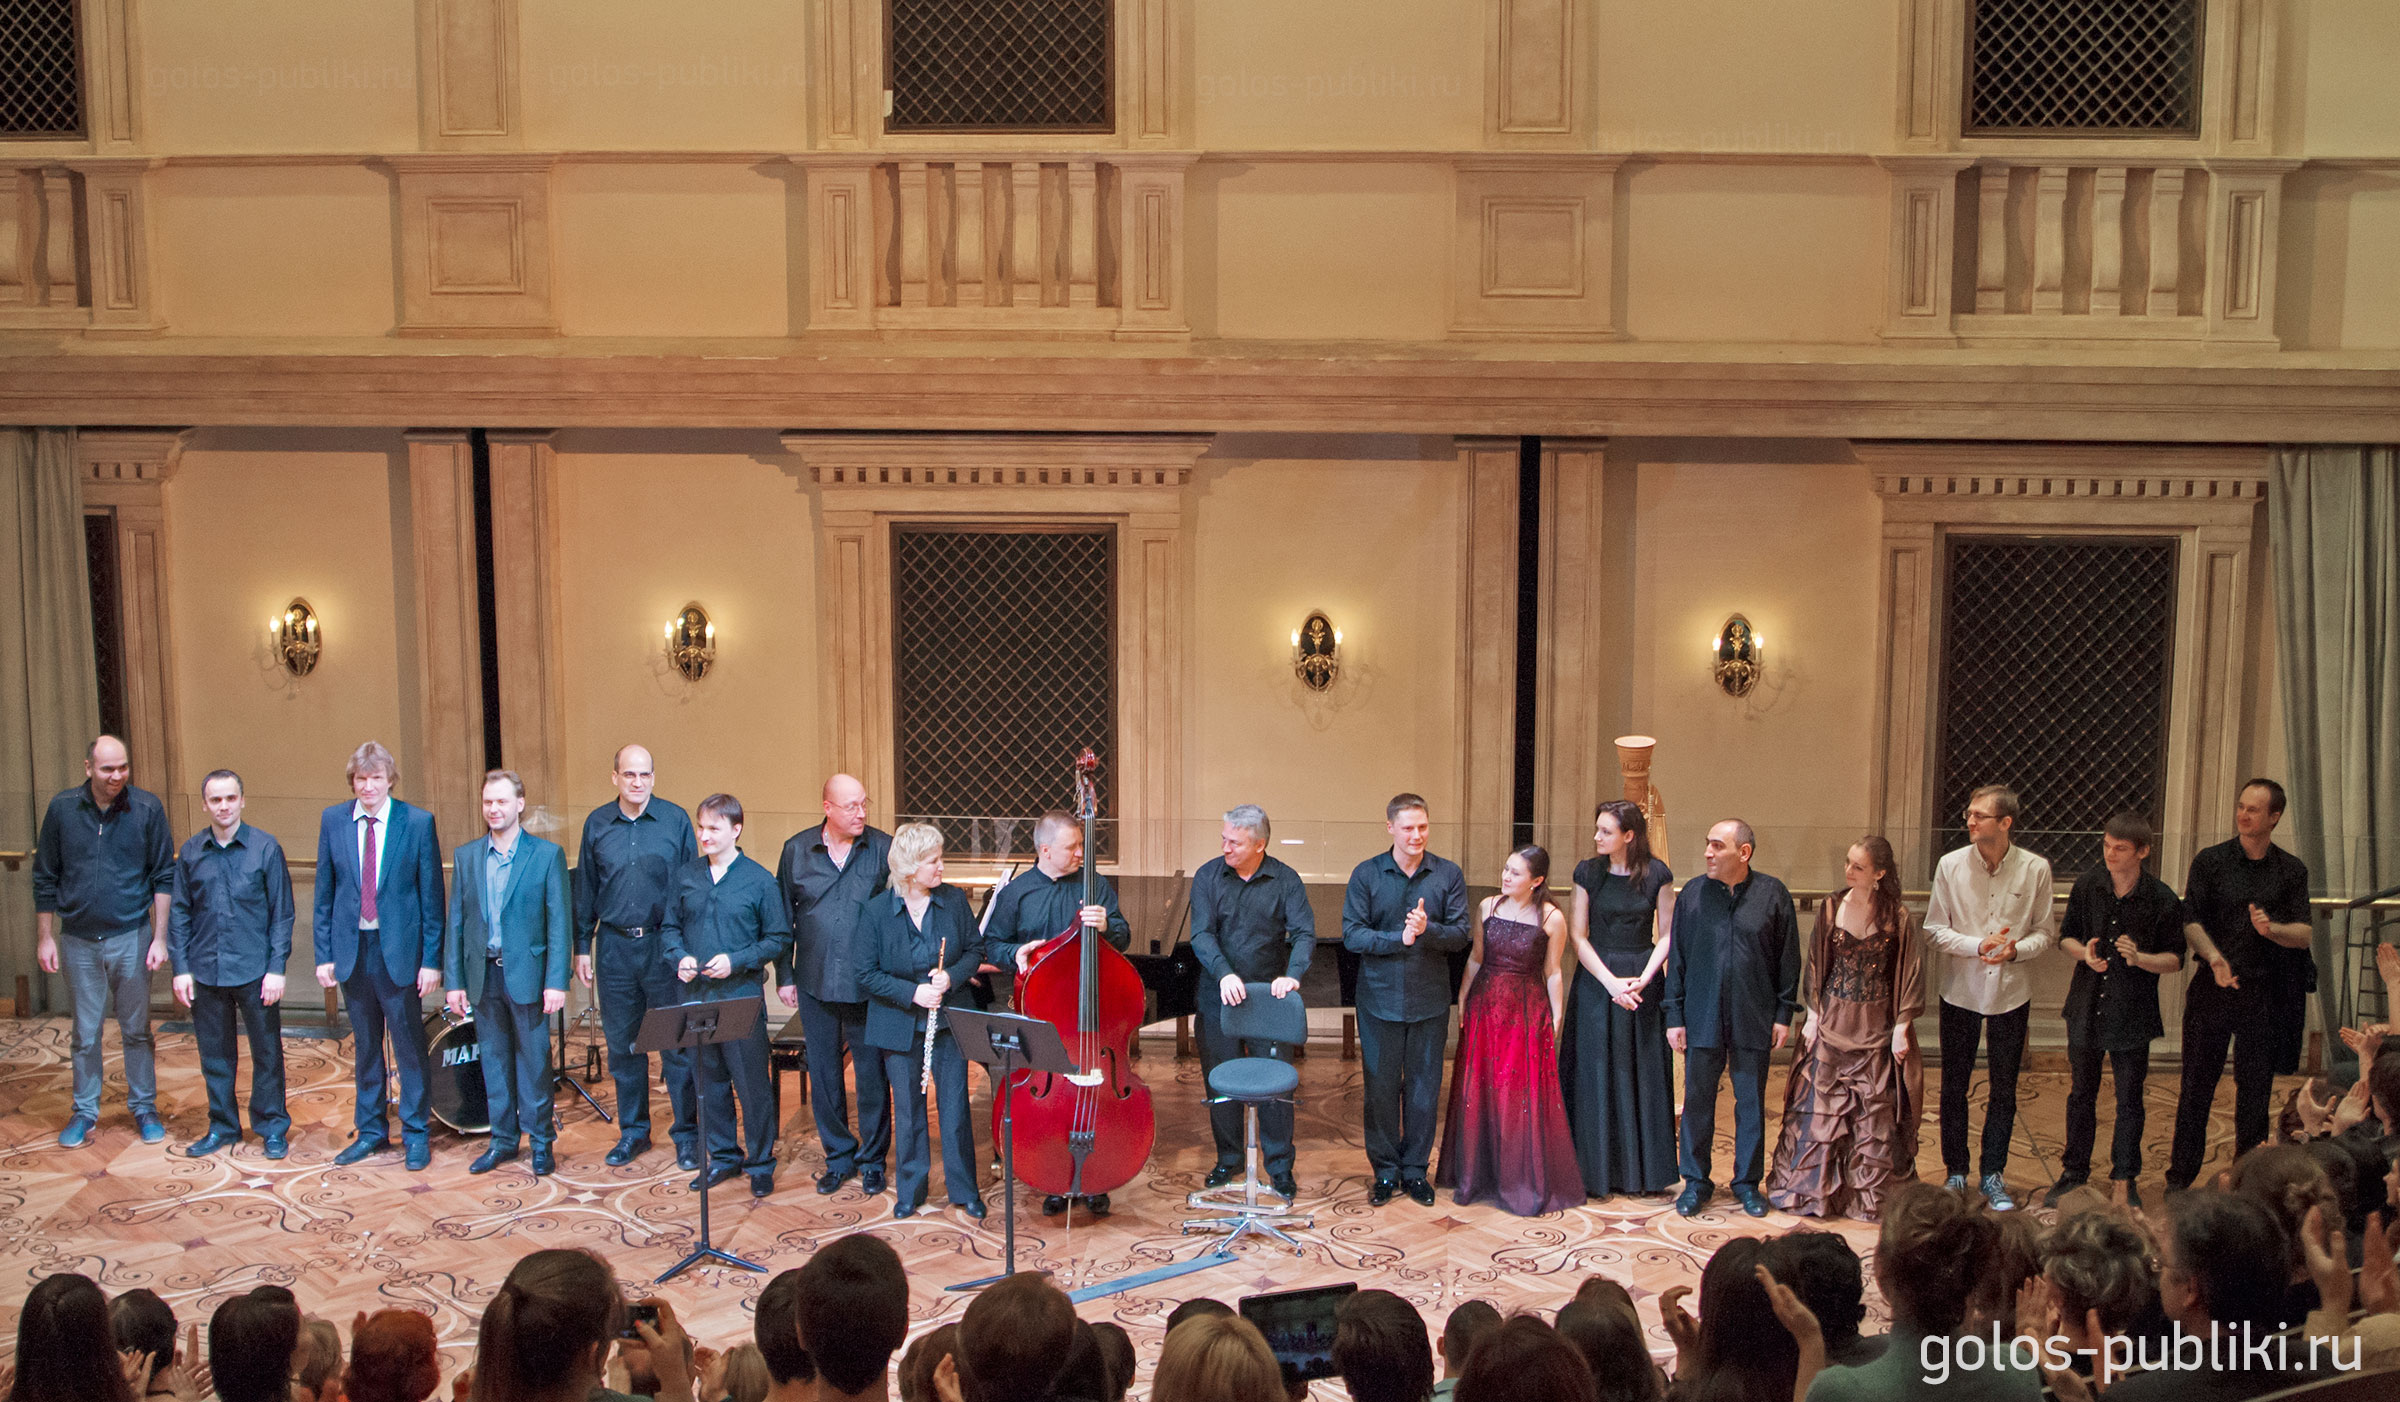 Участники концерта «Мир контрабаса», Большой театр 16 апреля 2015